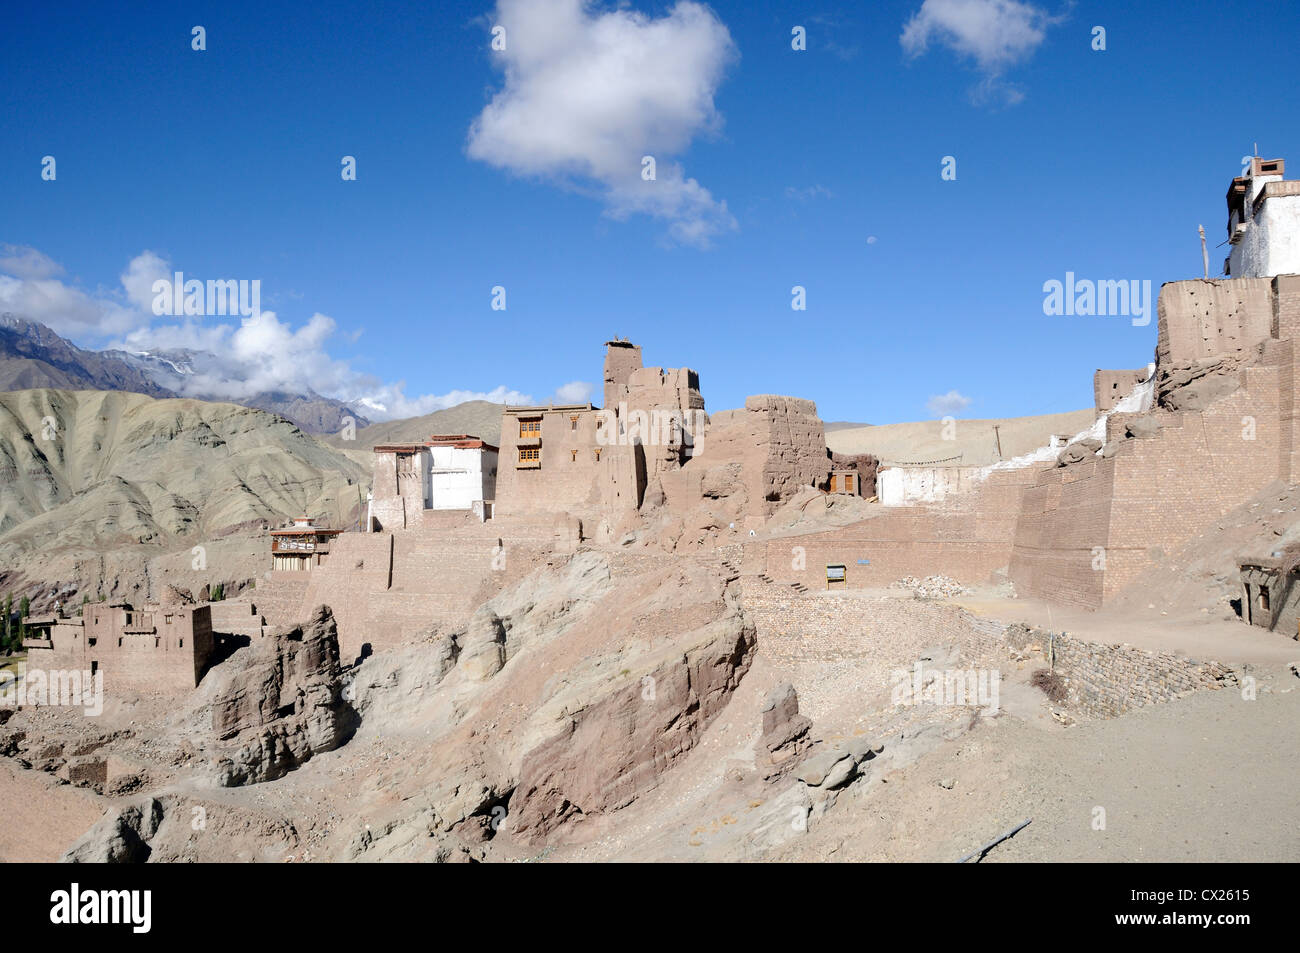 Le xvie siècle en ruine du palais royal et forteresse à Basgo avec le blanc Chamba Lhakhang temple. Basgo, Ladakh, Inde Banque D'Images